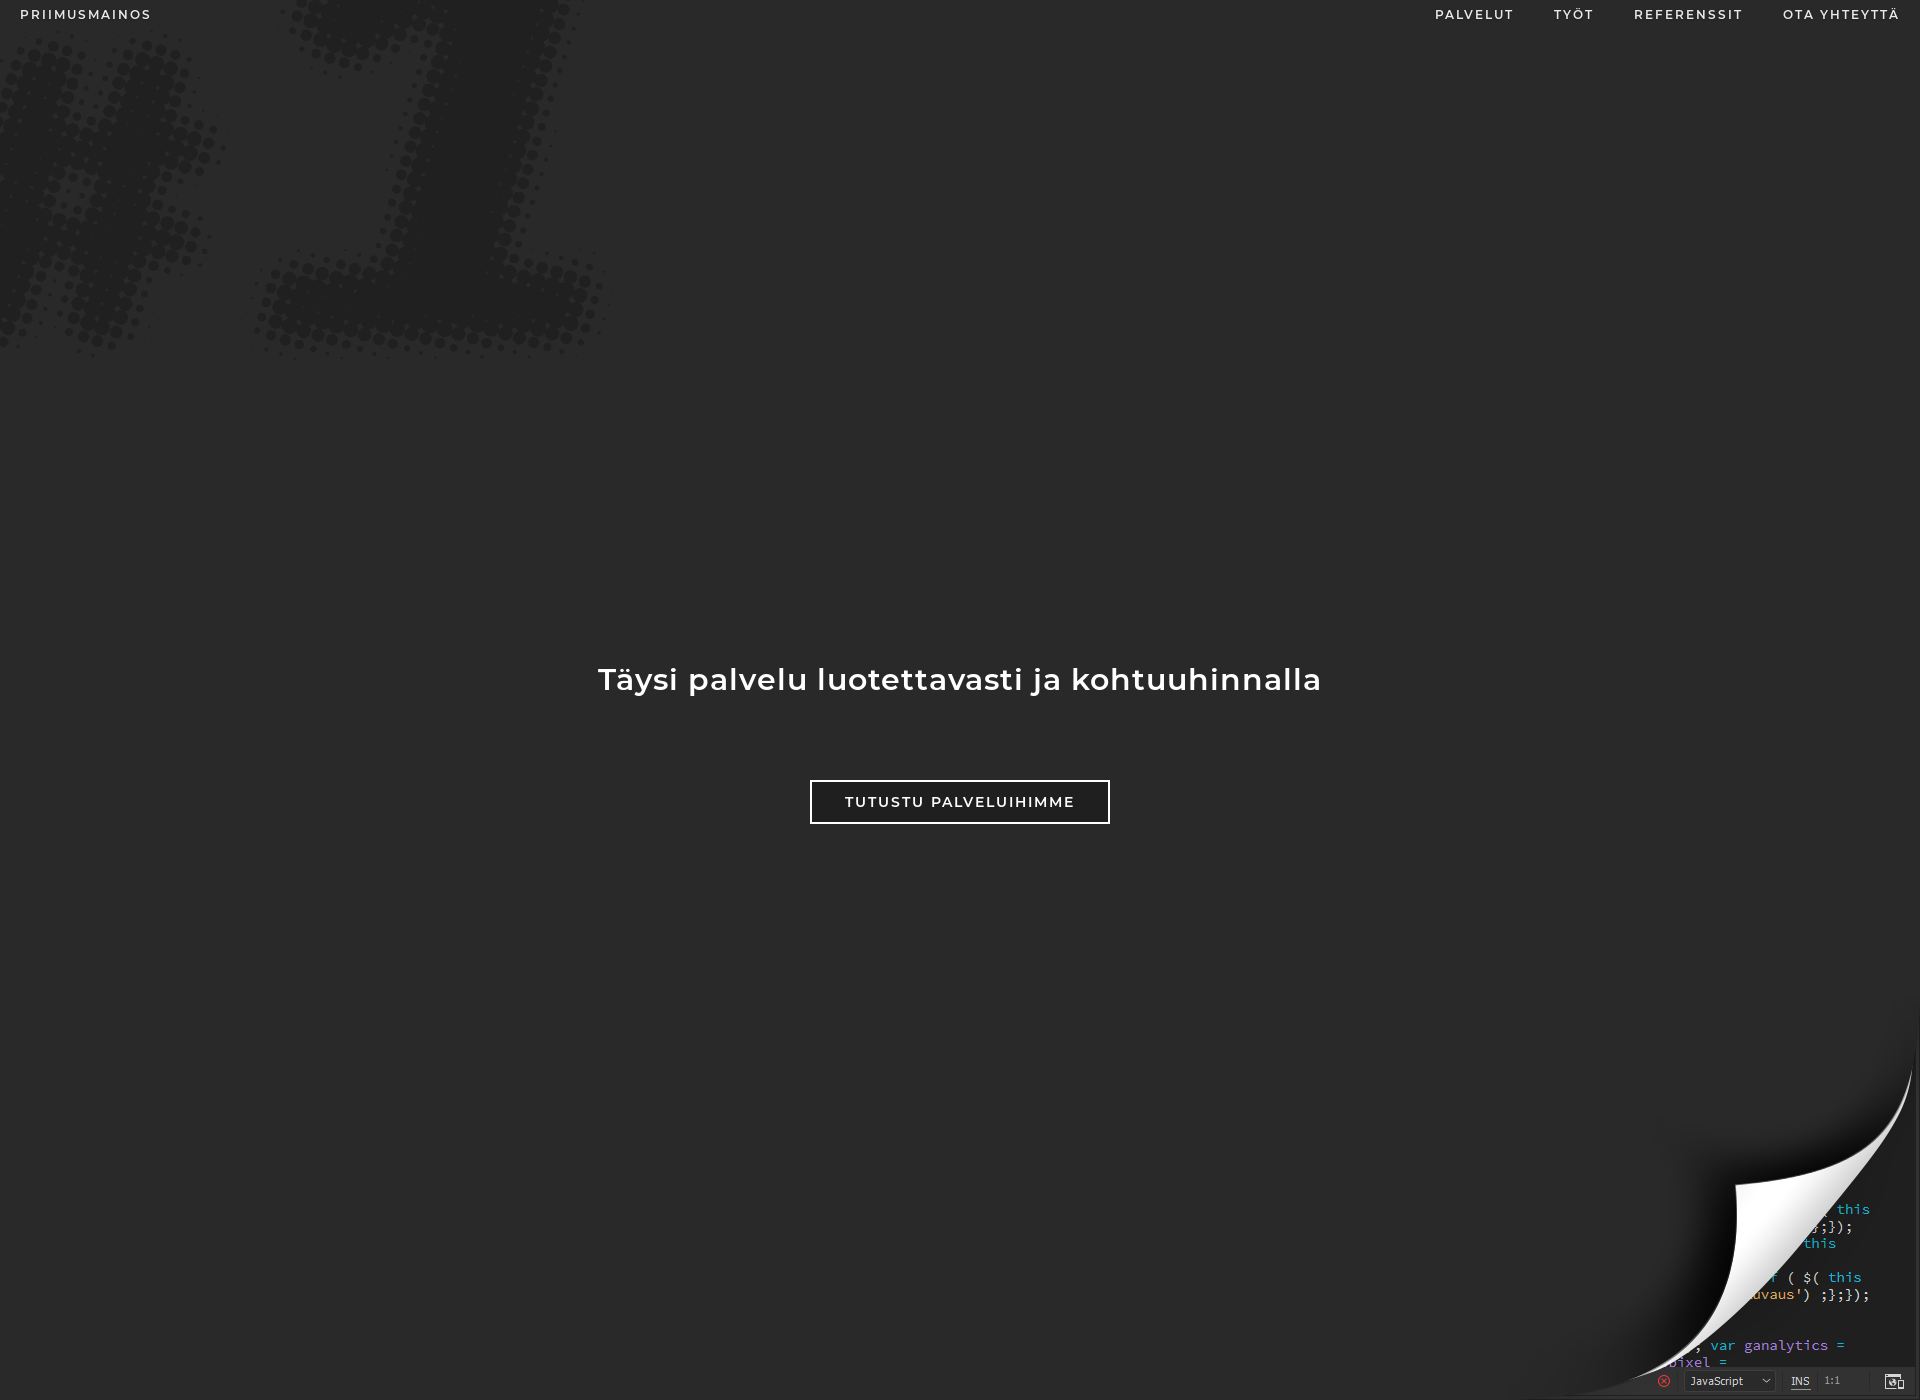 Screenshot for priimusmainos.fi